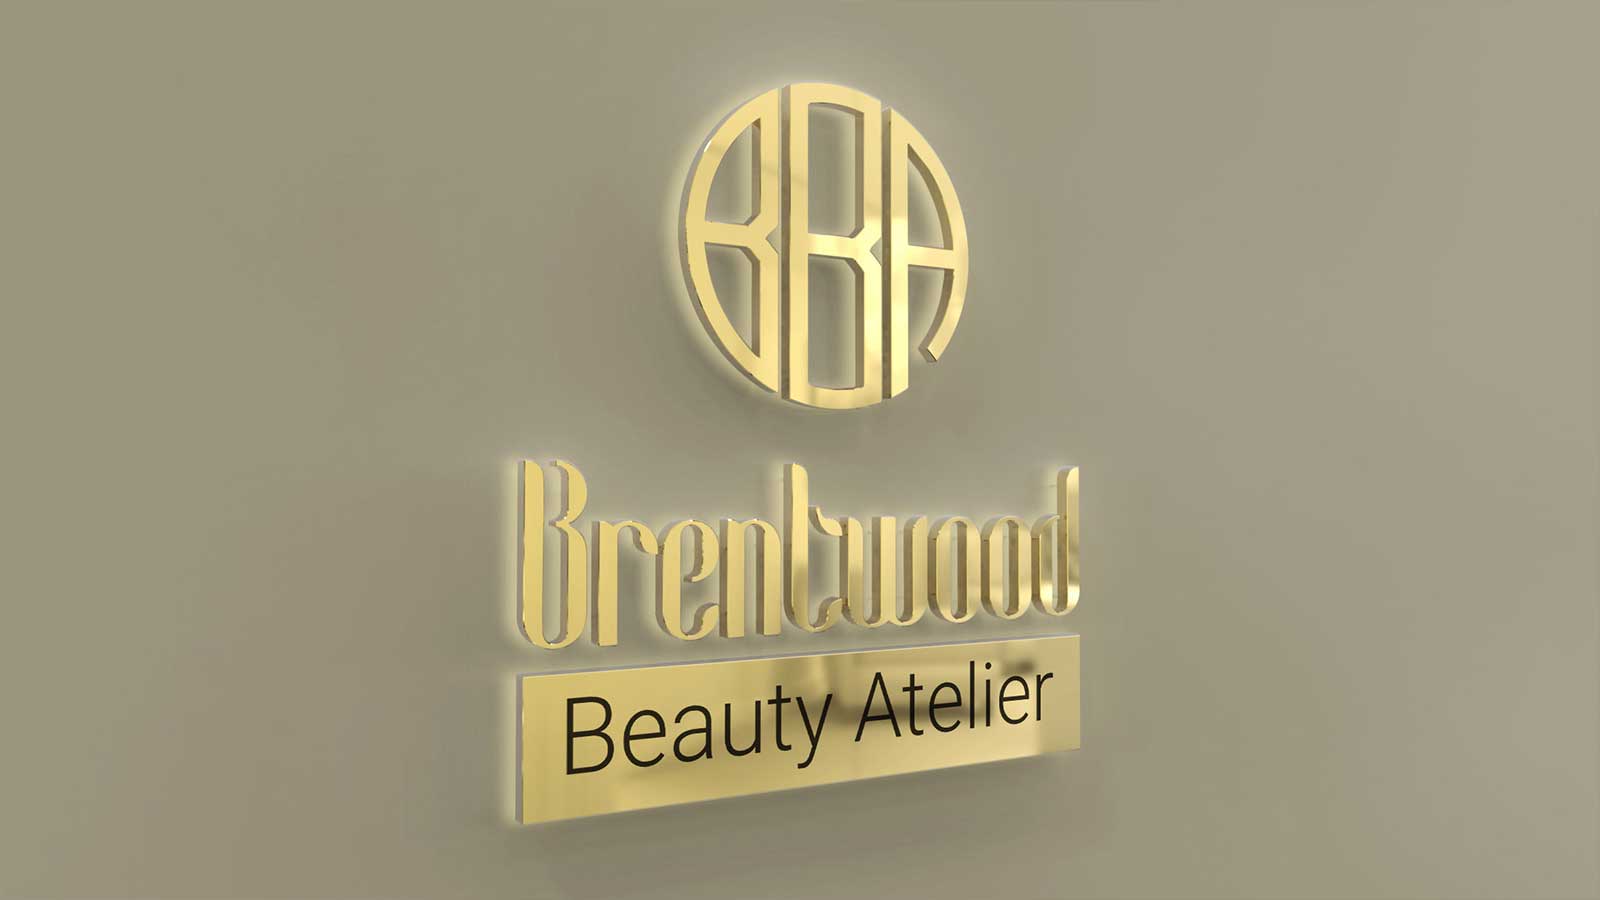 brentwood back illuminated sign